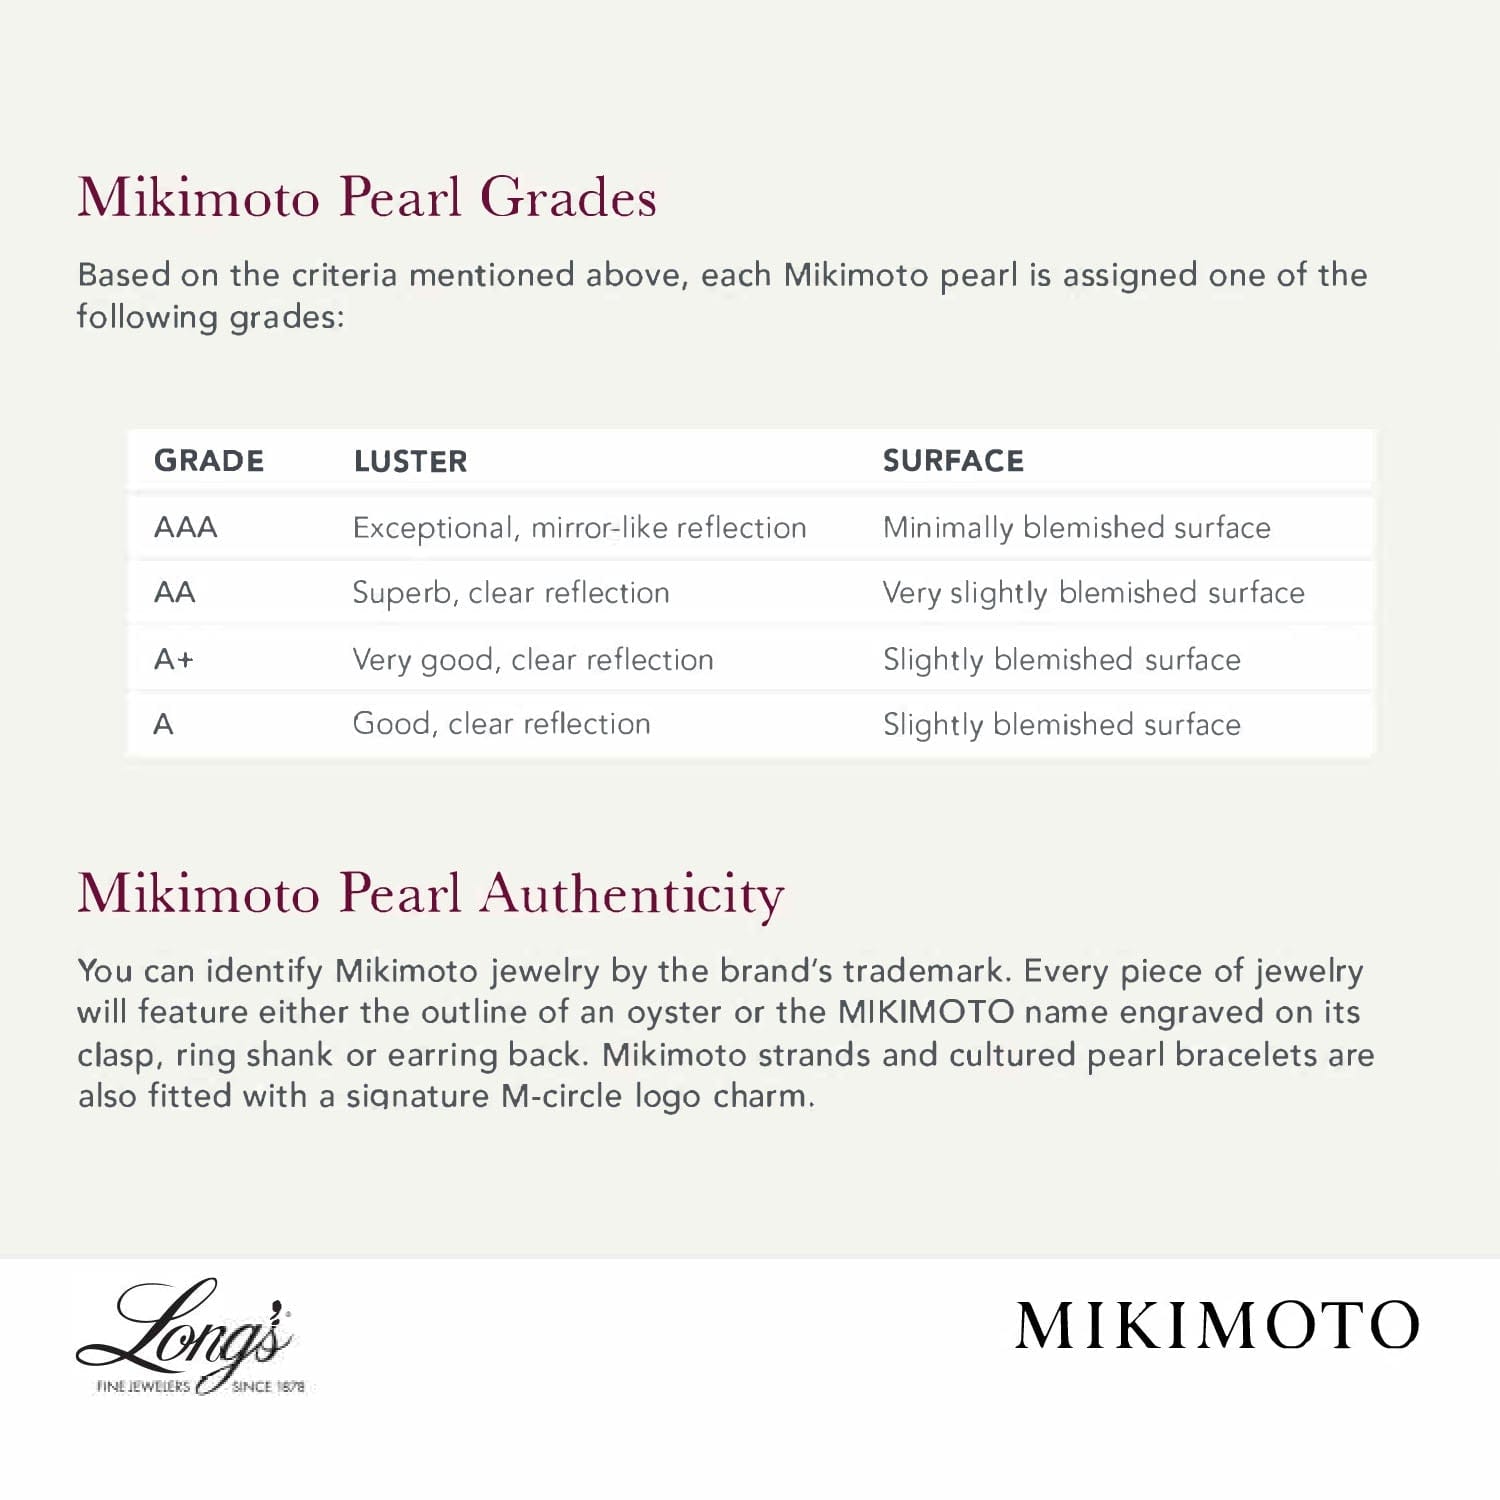 Mikimoto 18K White Gold Pearl and Diamond Pendant